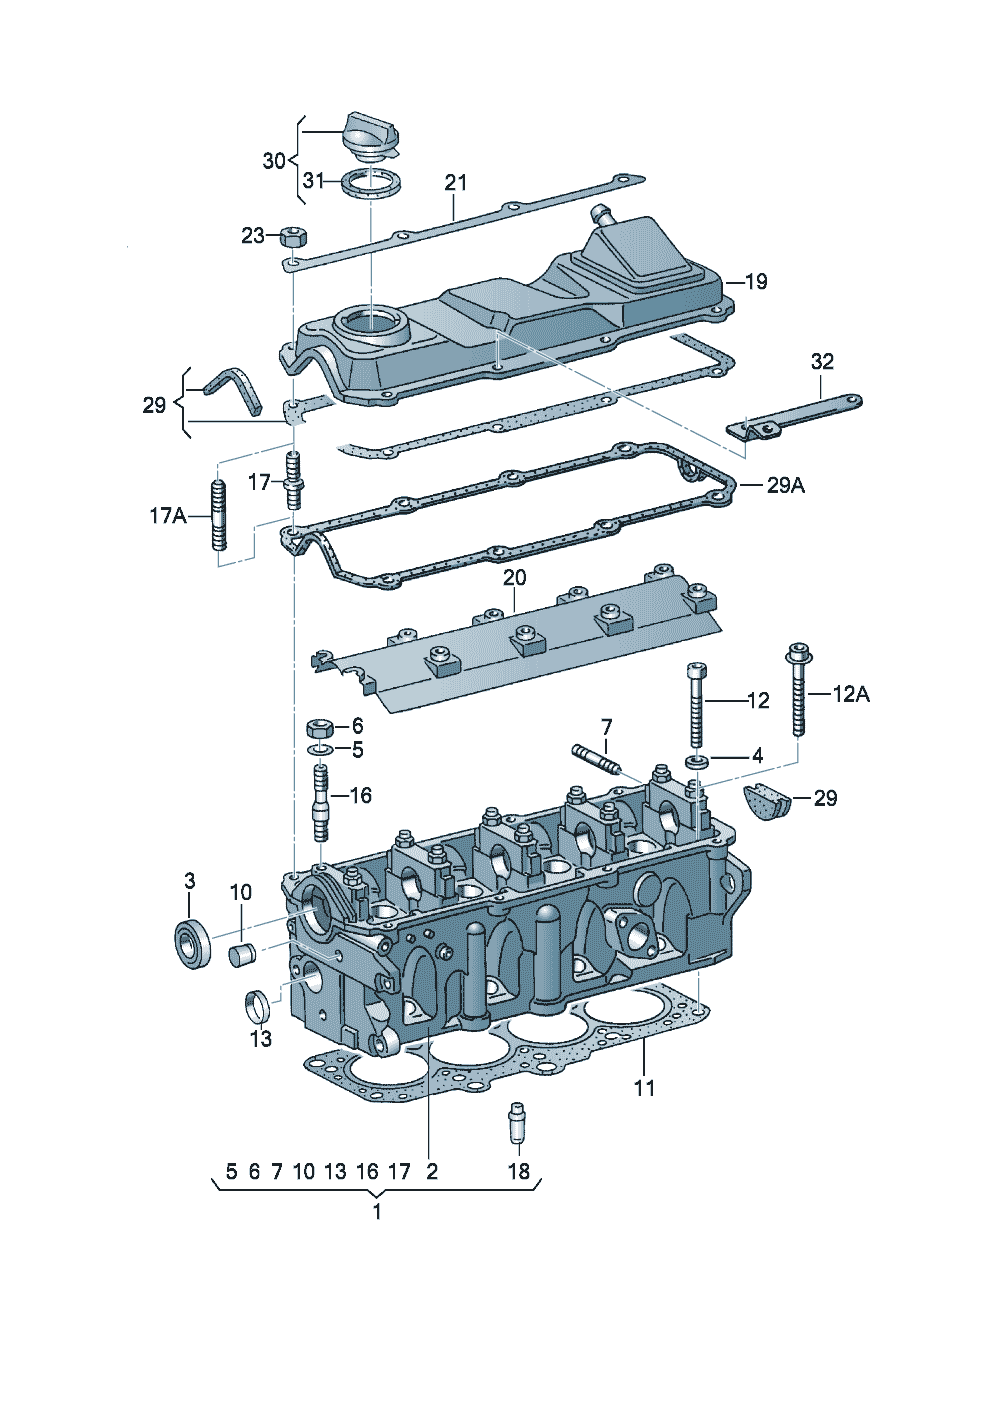 Cylinder headcylinder head cover 2.0 Ltr. - Audi Cabriolet - aca